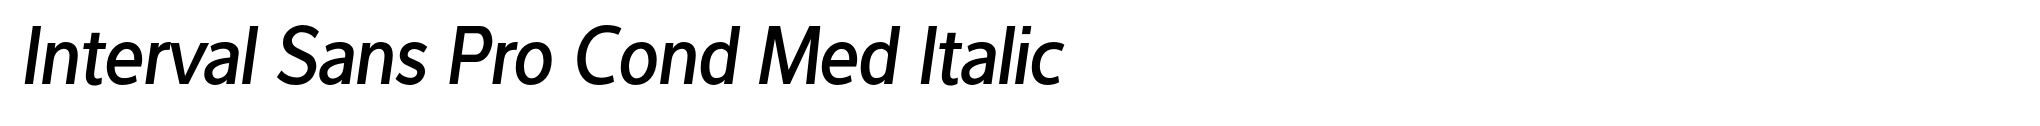 Interval Sans Pro Cond Med Italic image